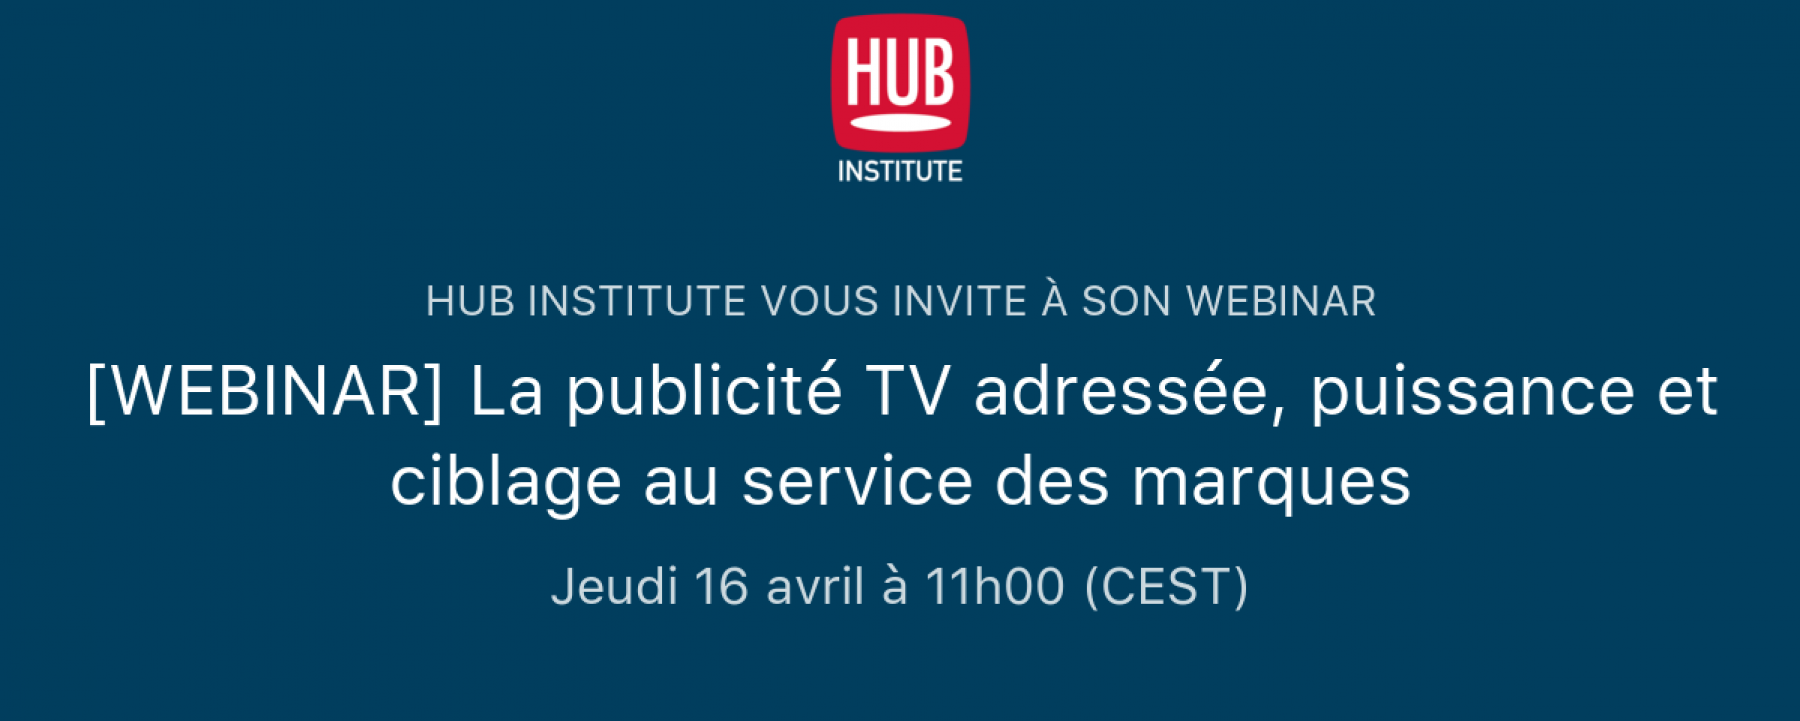 Webinar La publicité TV adressée, puissance et ciblage au service des marques, le 16 avril 2020, organisé par le Hub Institute 